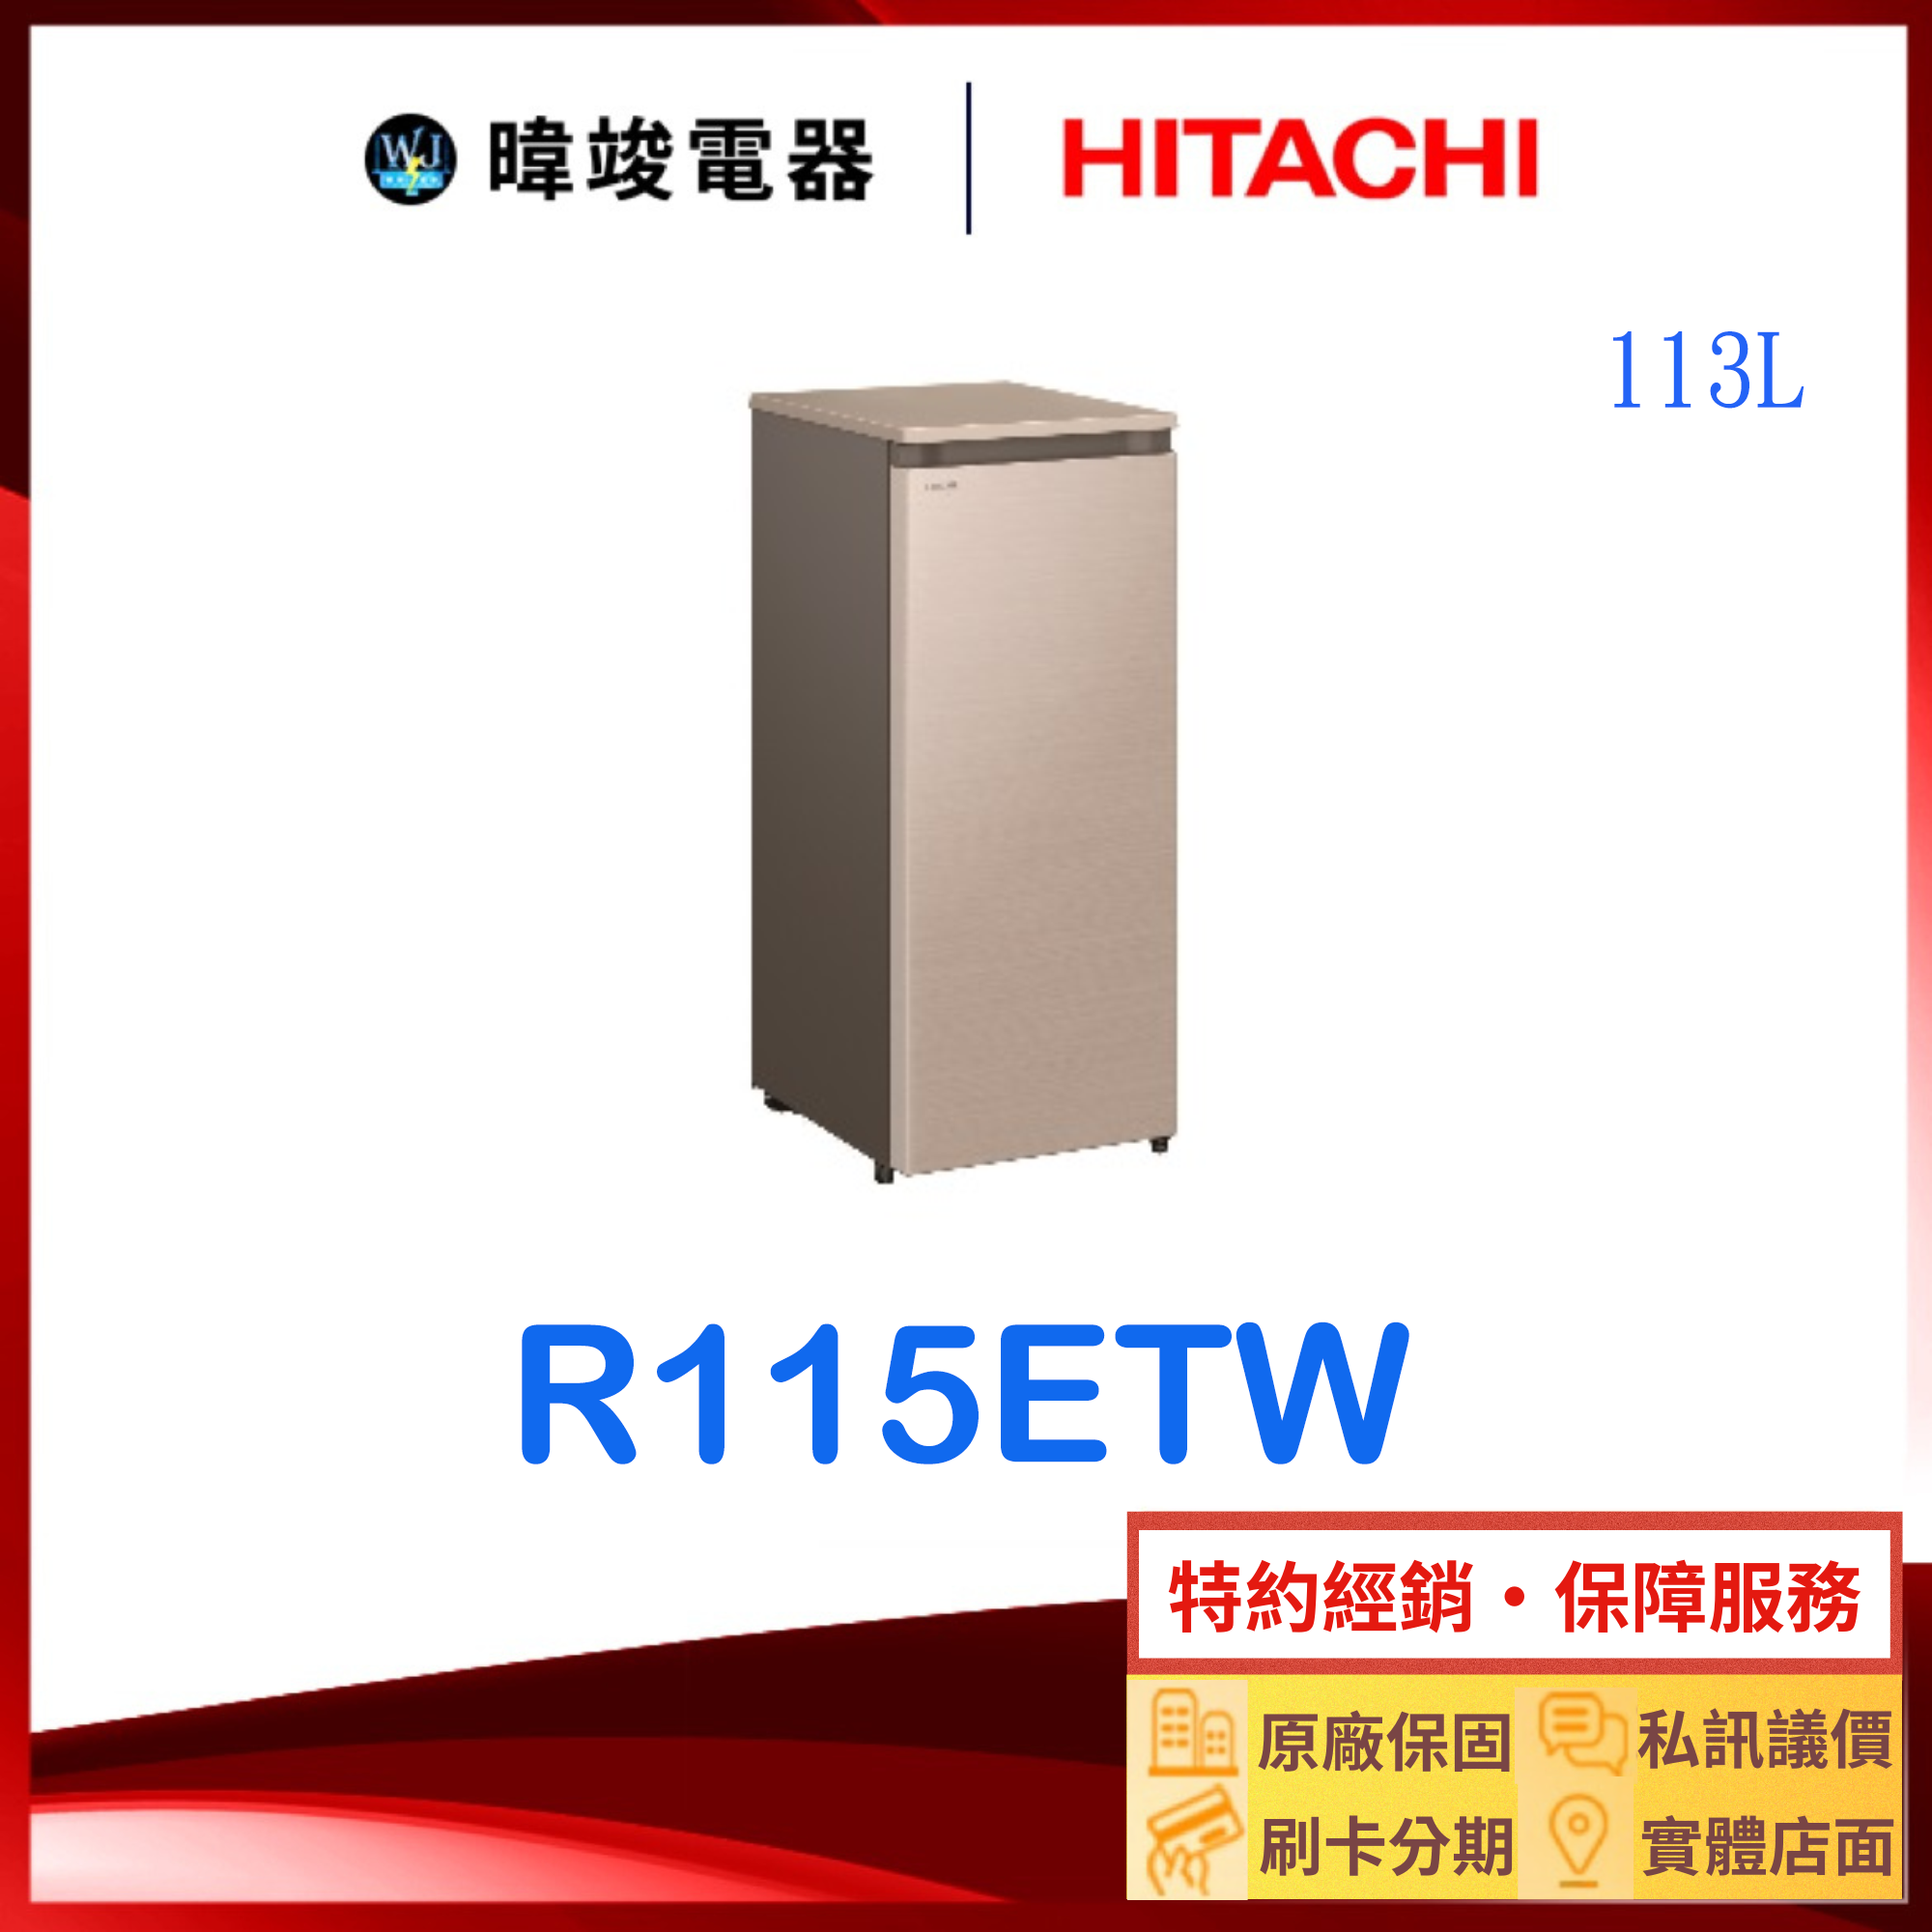 現貨【暐竣電器】HITACHI 日立 R115ETW 直立式冷凍櫃 窄版設計 R-115ETW 冷凍櫃 原廠保固